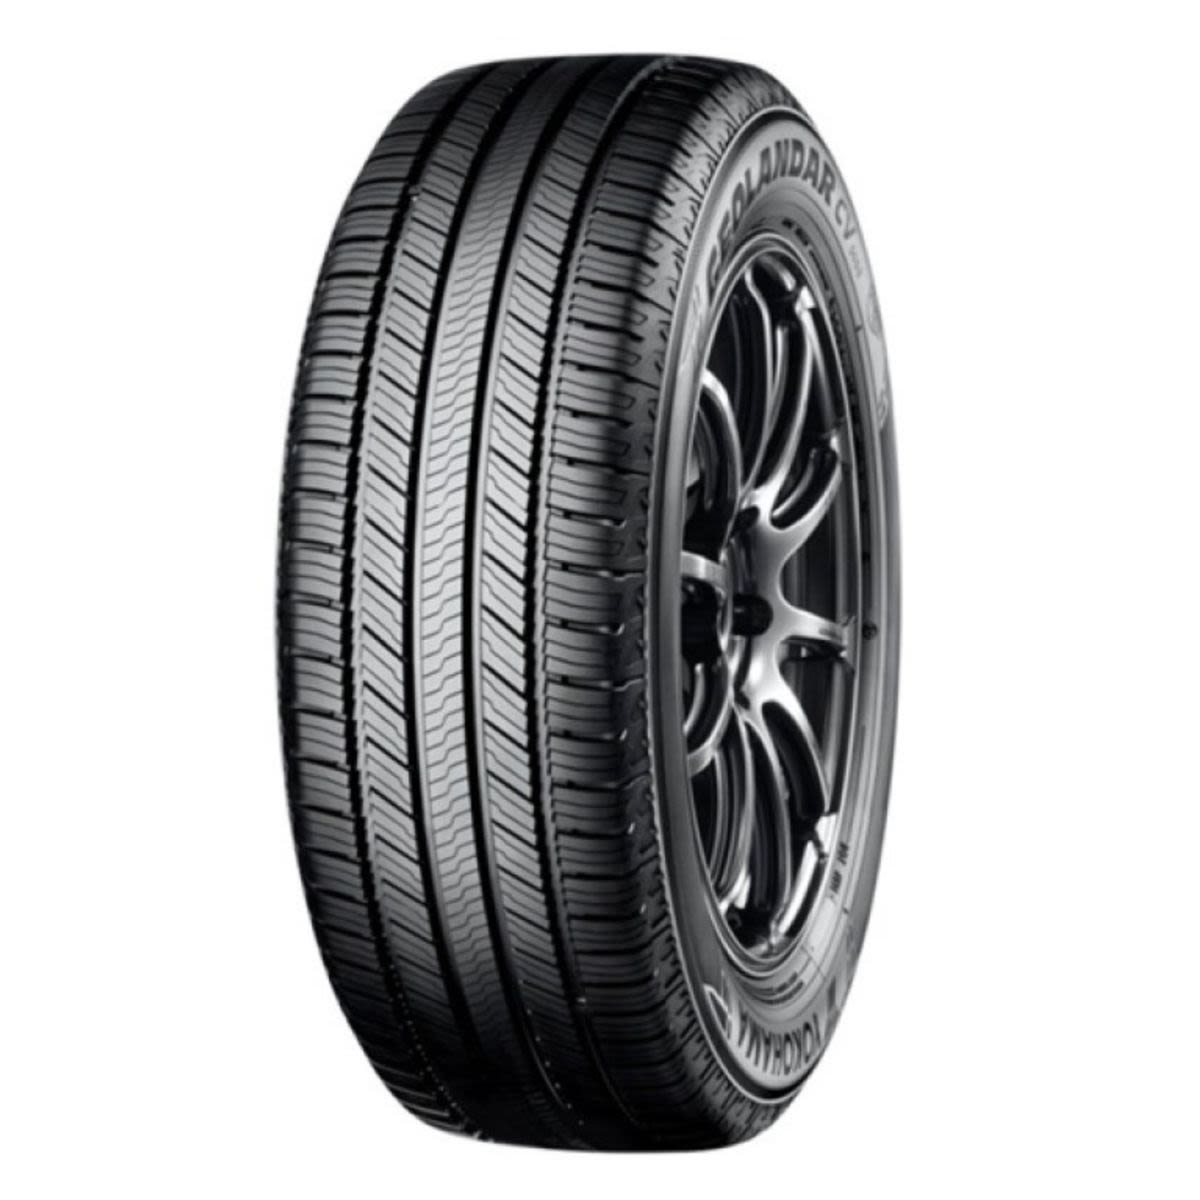 Neumáticos de verano YOKOHAMA Geolandar CV G058 255/50R19 XL 107V